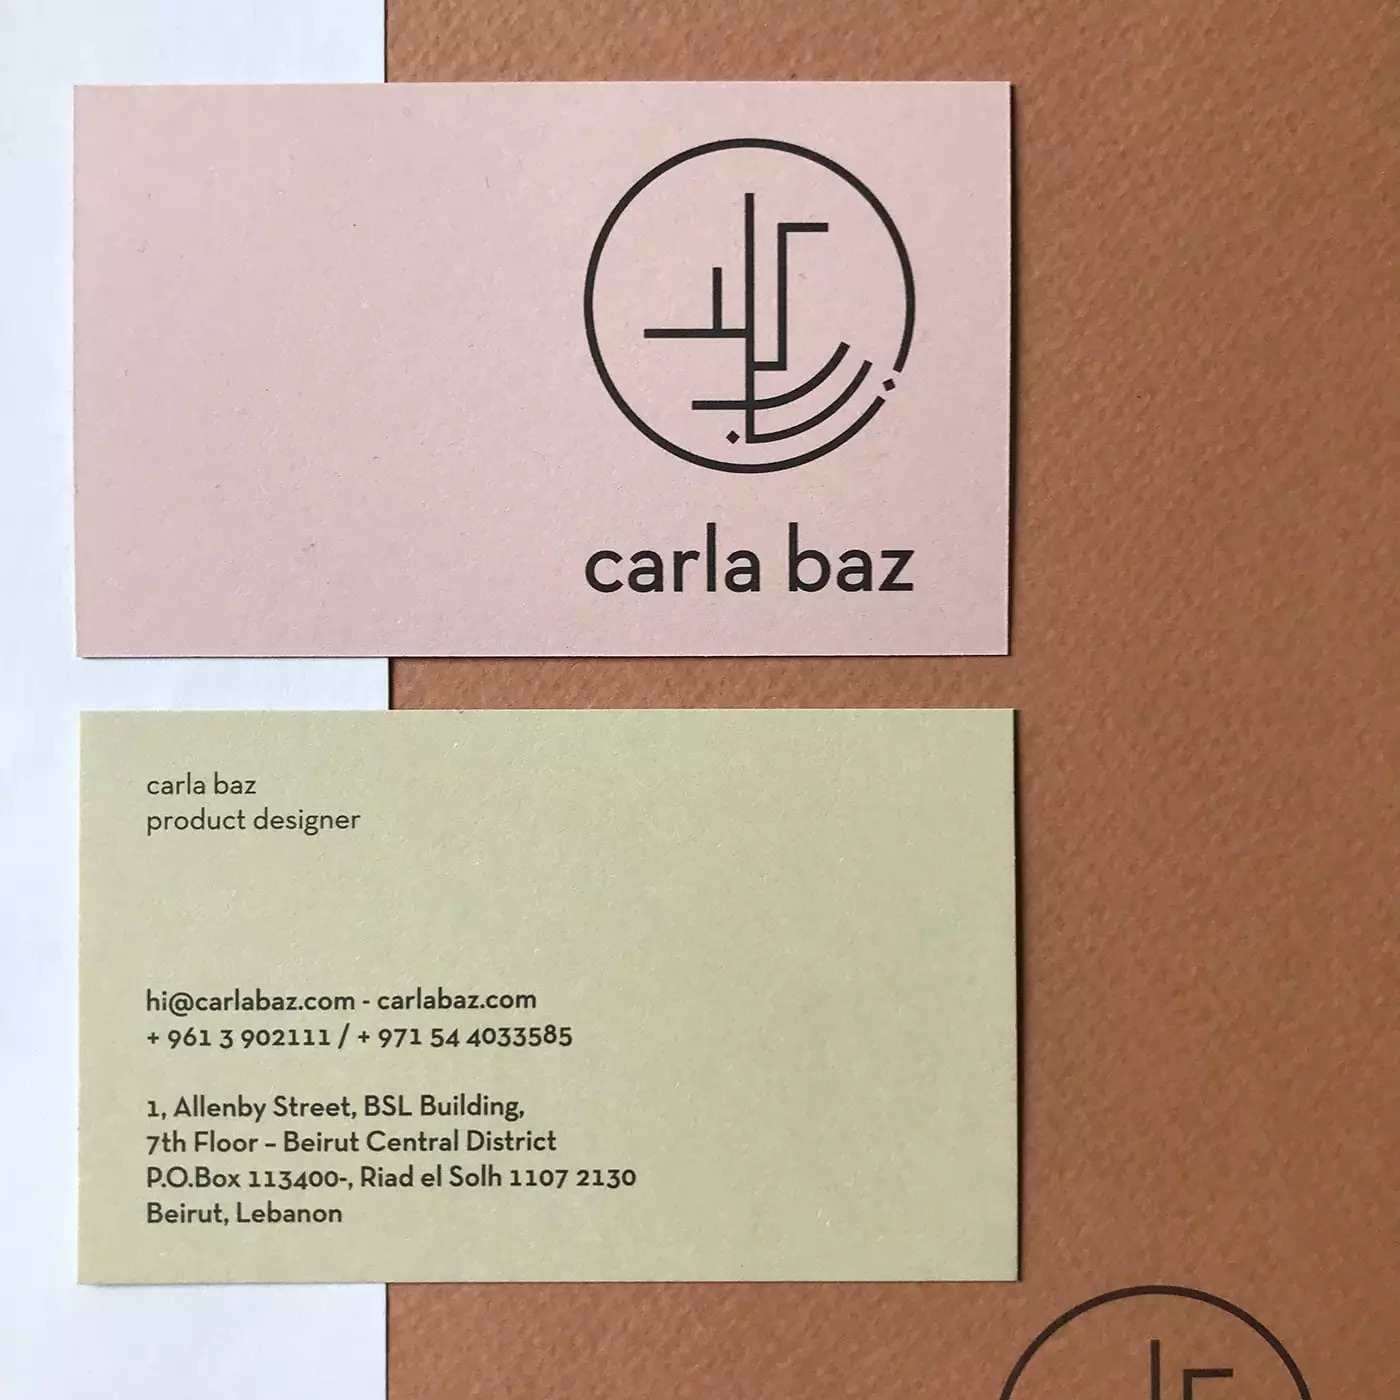 产品设计师Carla Baz品牌形象设计